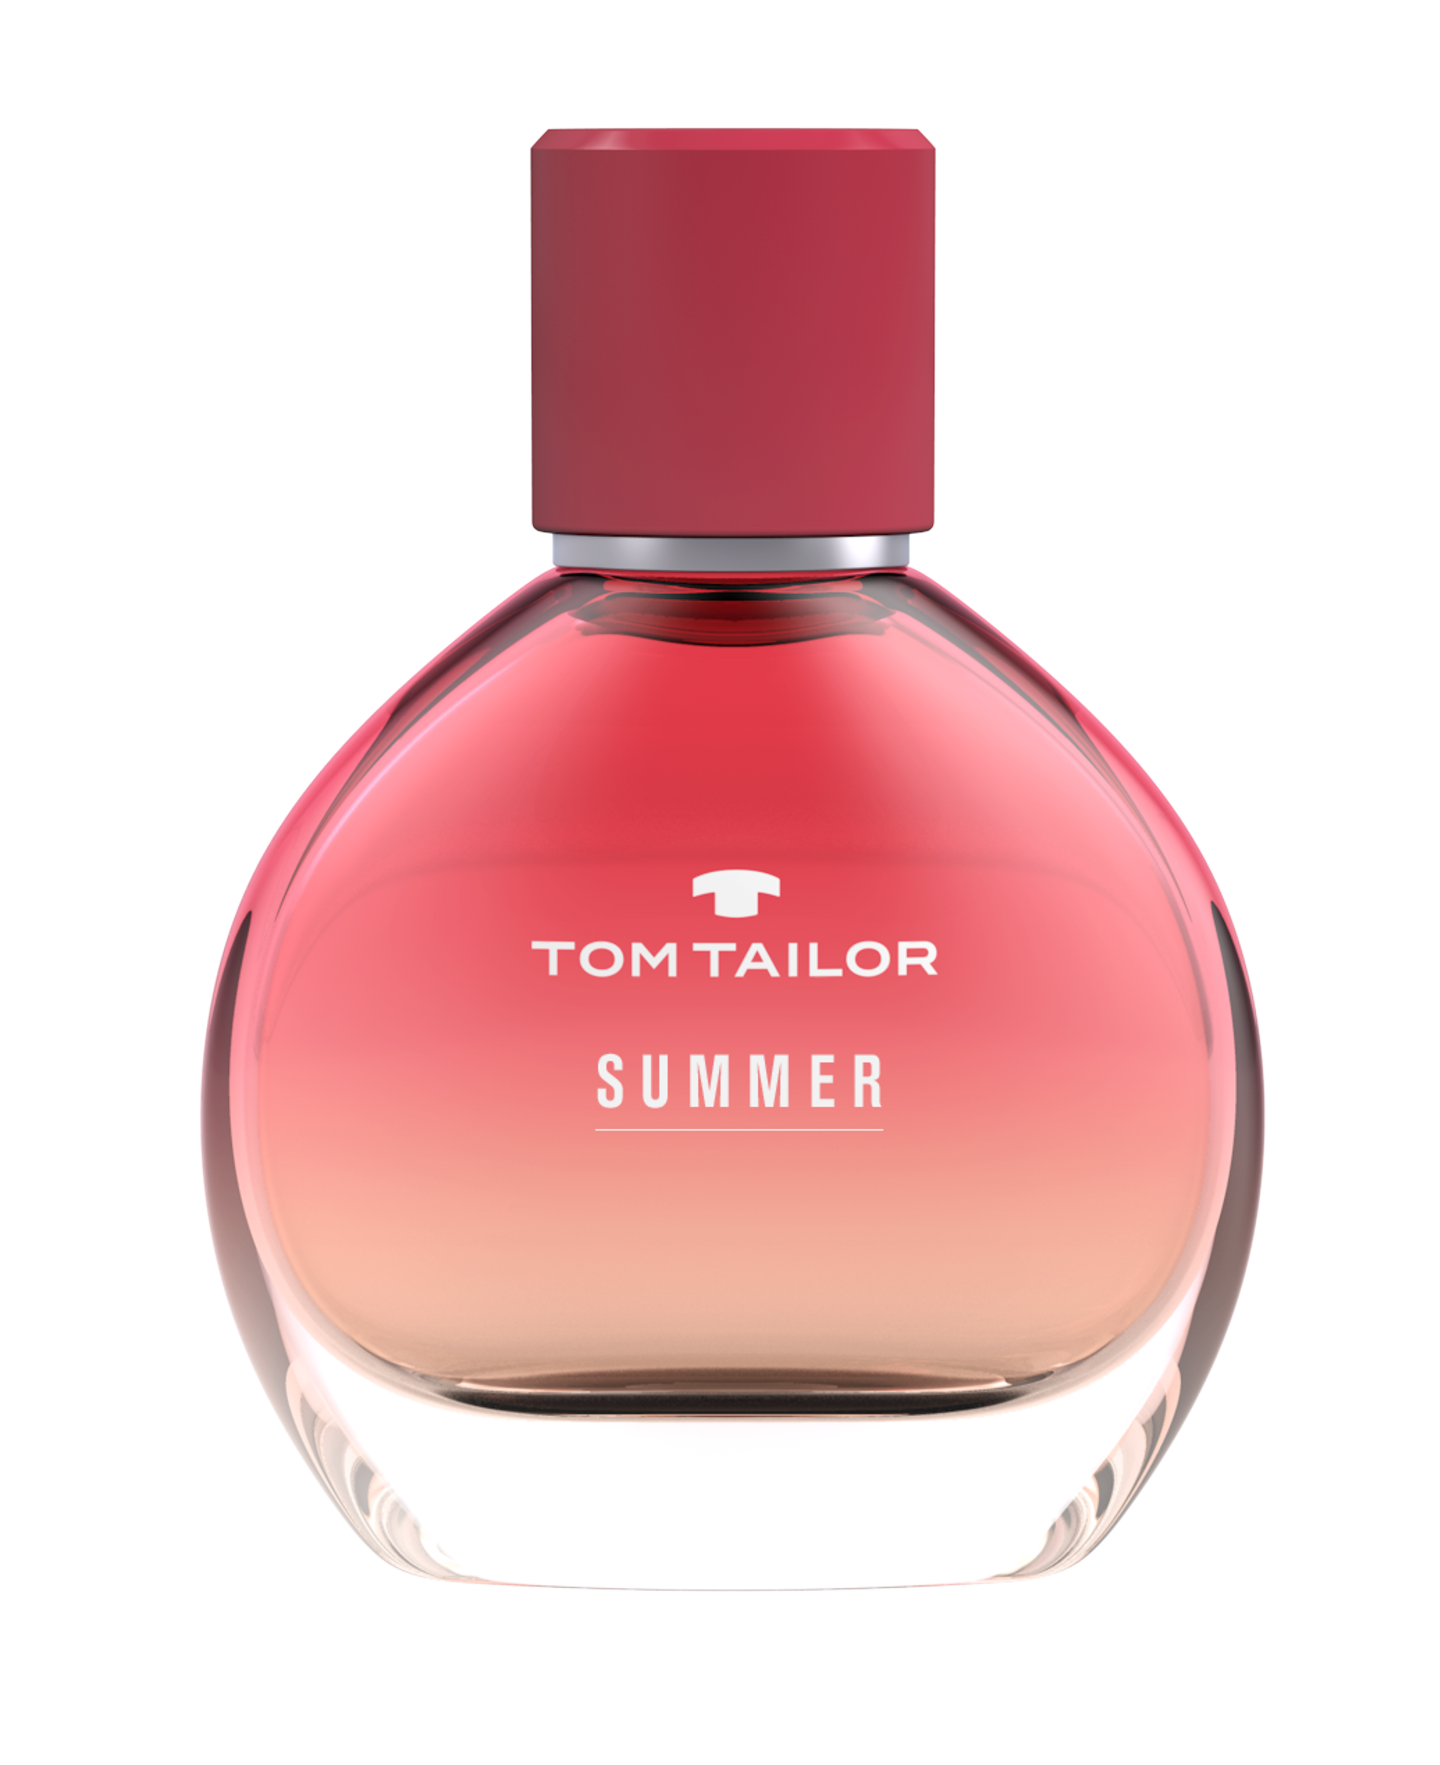 Tom Tailor Summer